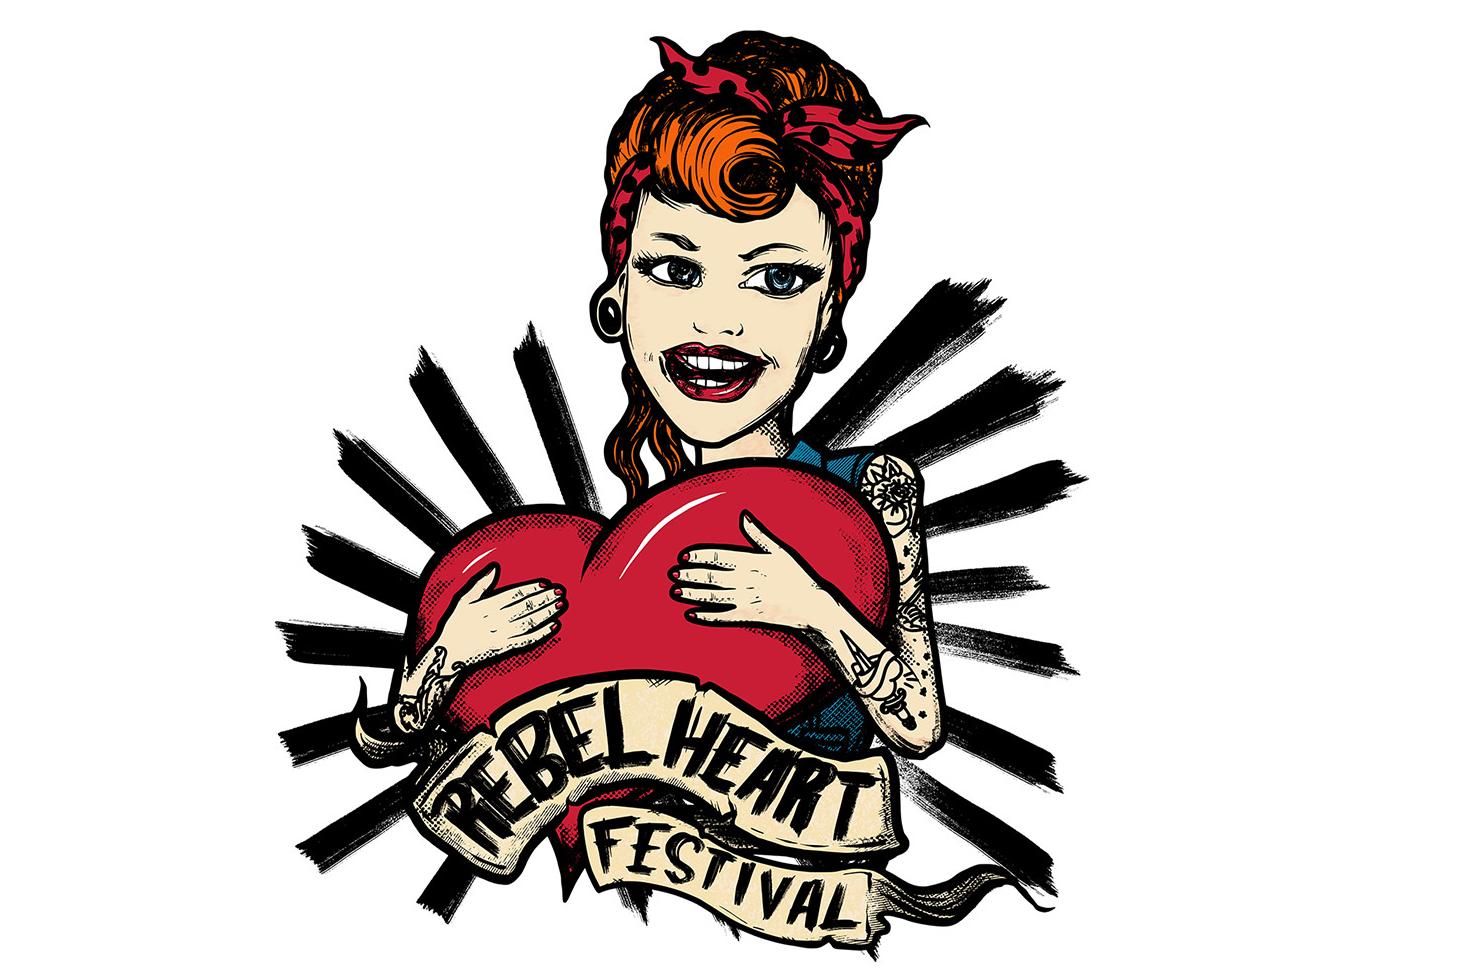 Rebel HeART Festival 2021